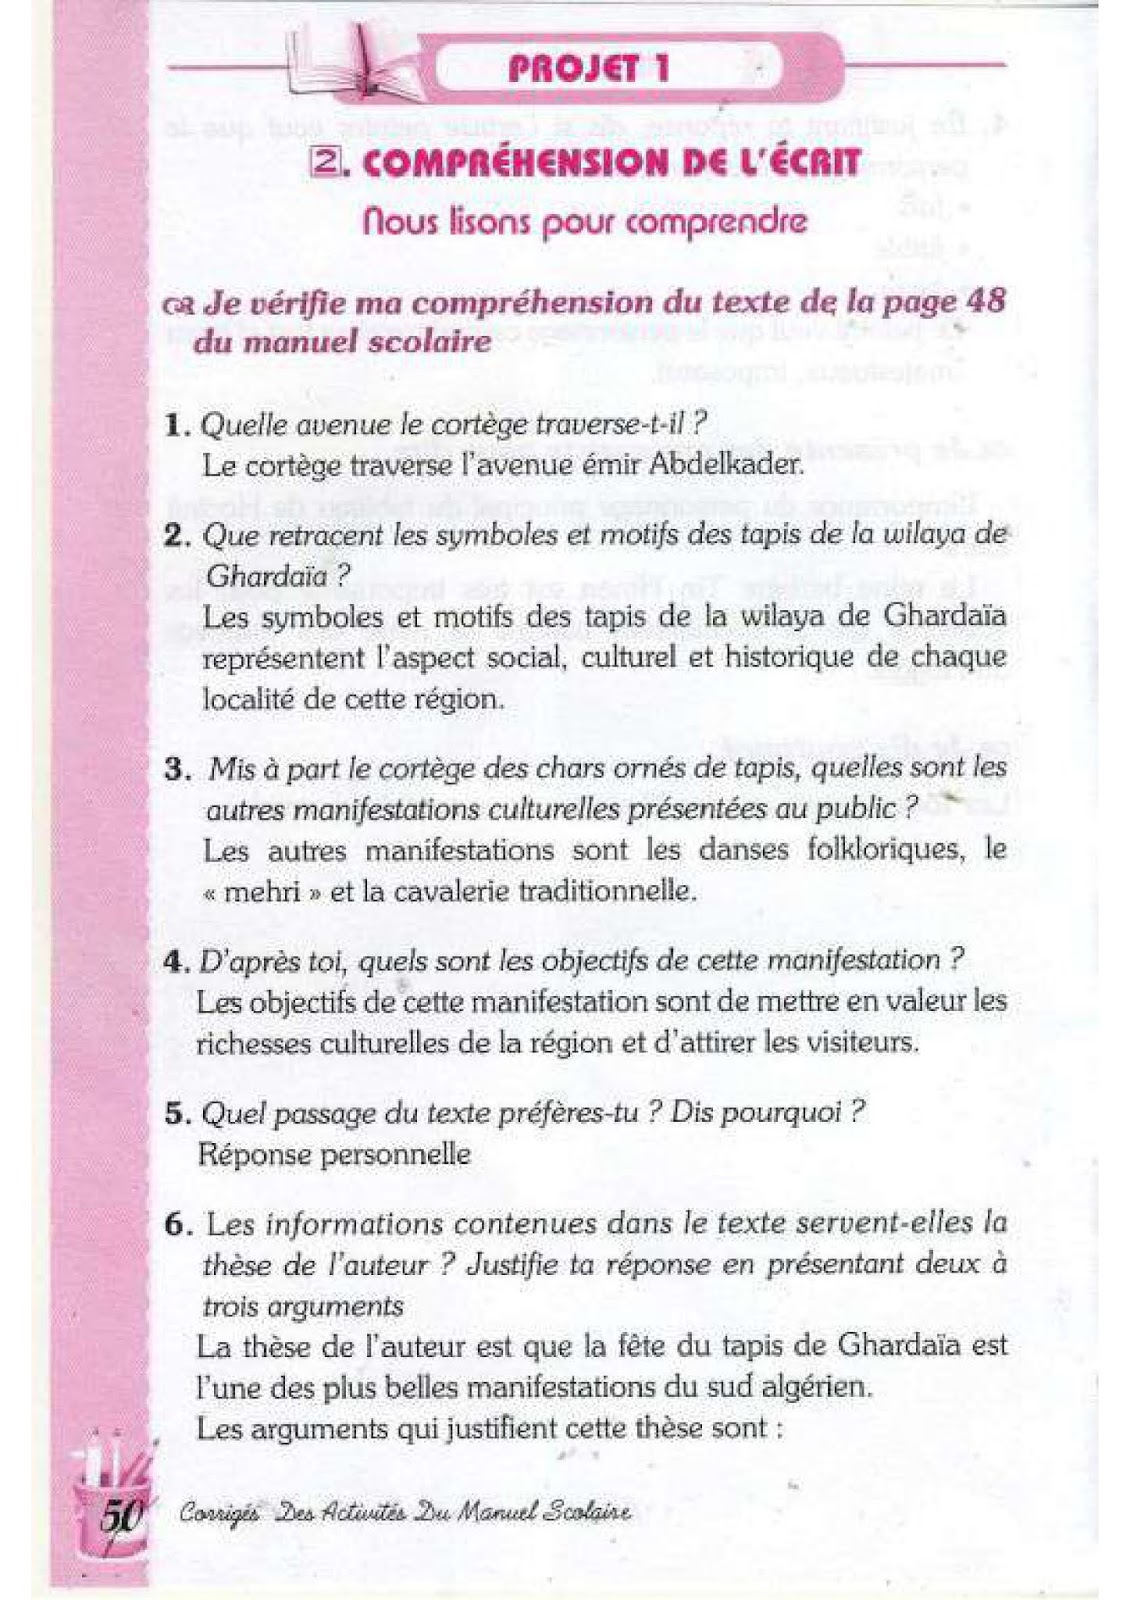 حل تمارين صفحة 48 الفرنسية للسنة الرابعة متوسط - الجيل الثاني